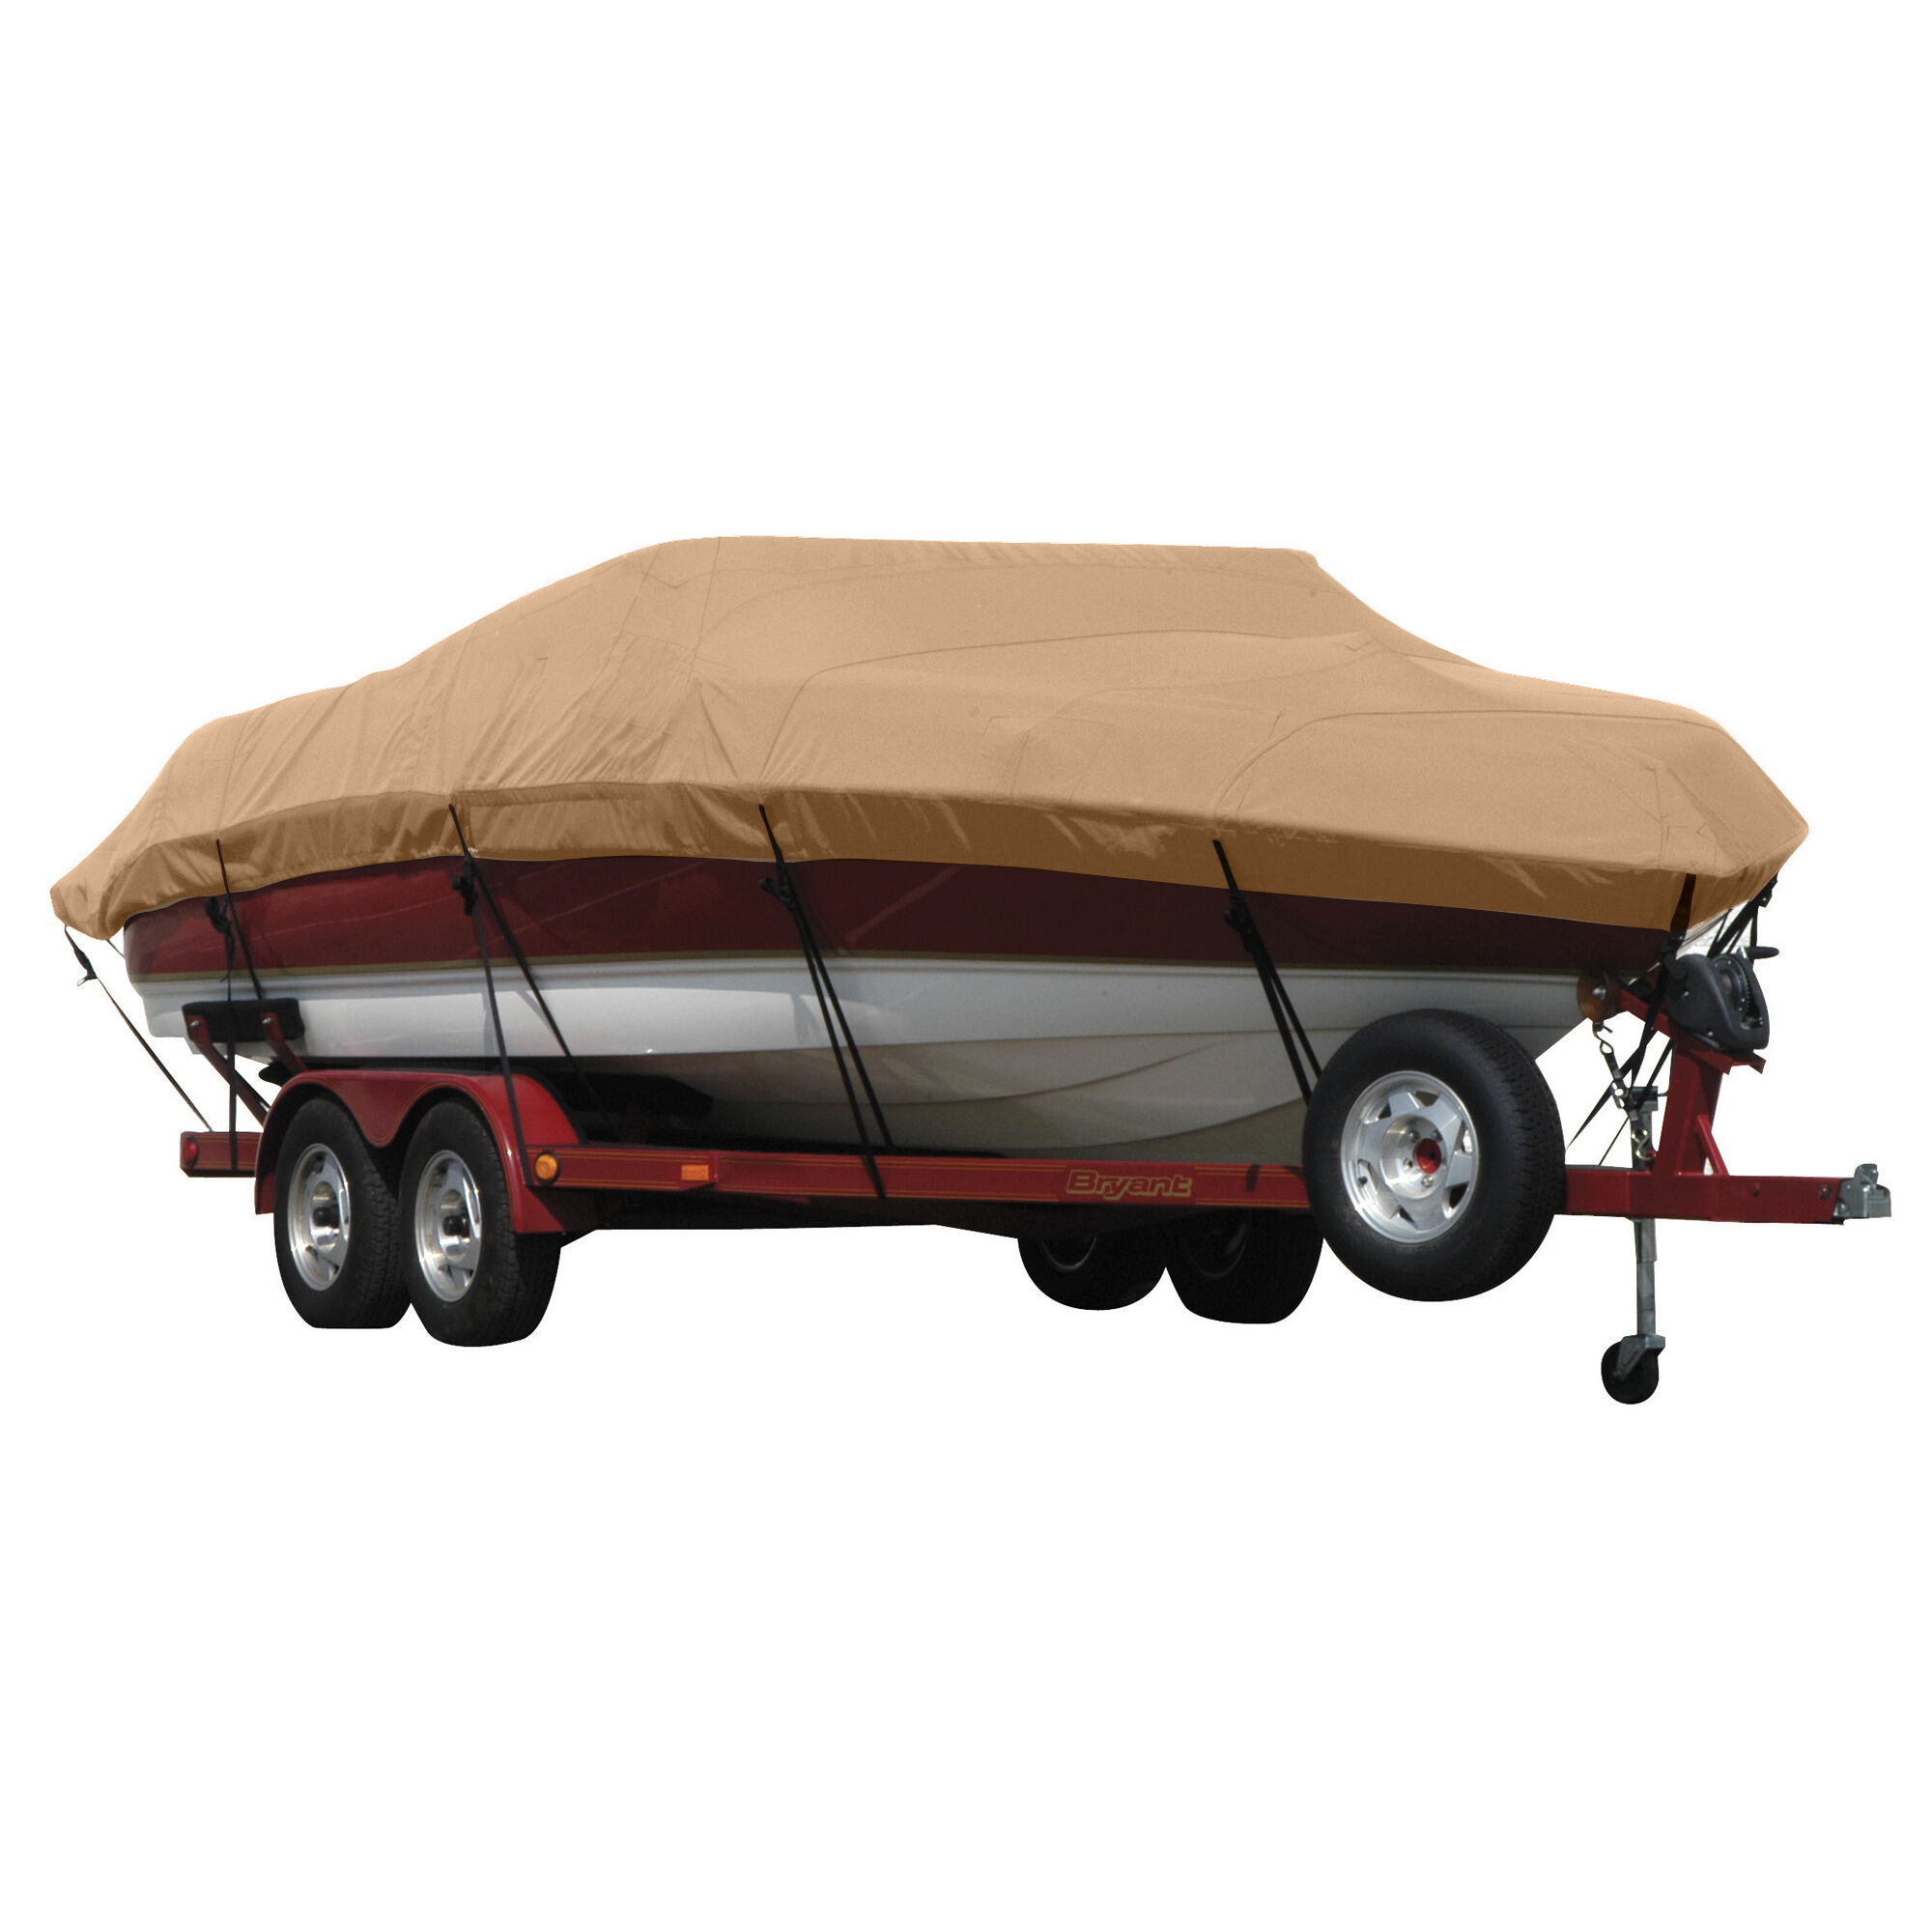 Covermate Exact Fit Sunbrella Boat Cover for Seaswirl Striper 2120 Striper 2120 Cuddy Hard Top No Pulpit I/O. Beige